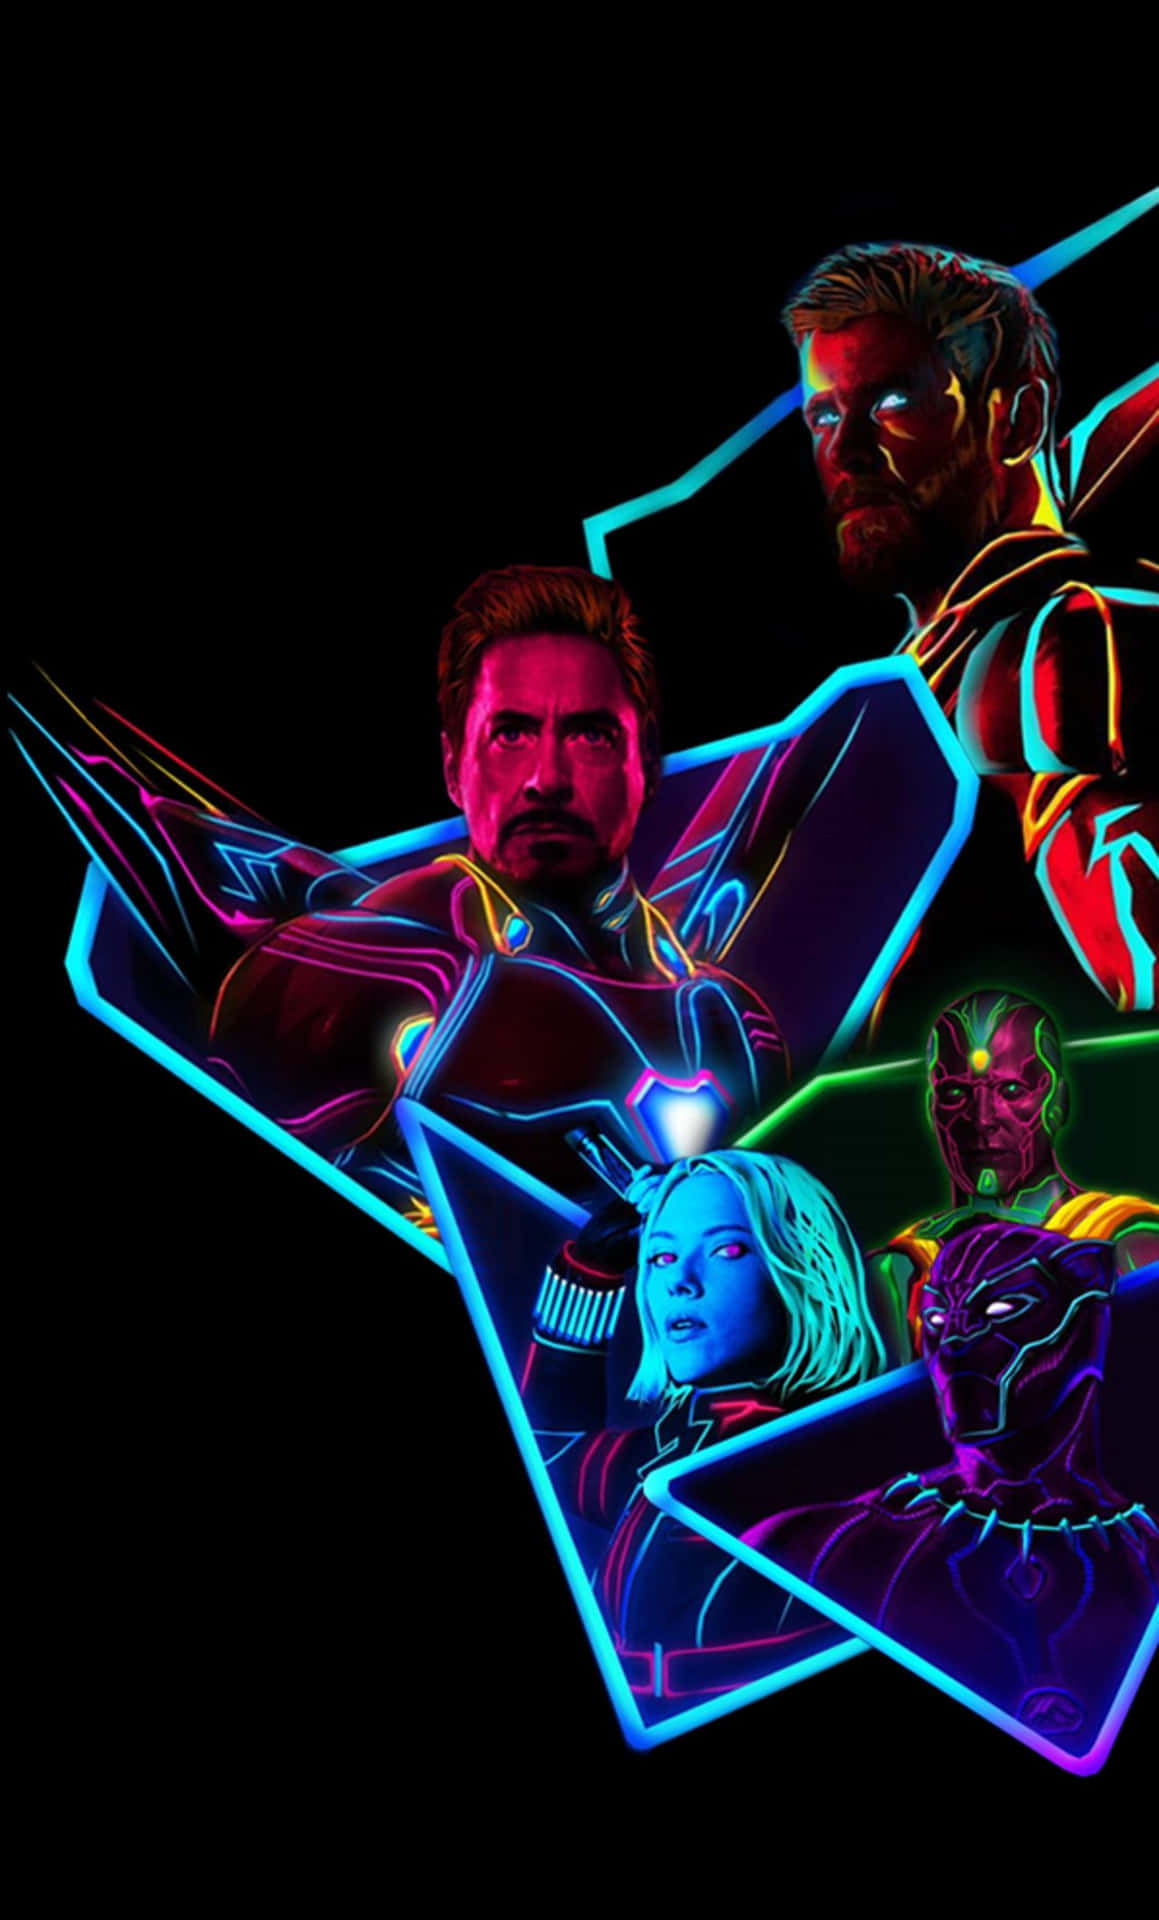 Avengerskaraktärer I Neonfärger. Wallpaper